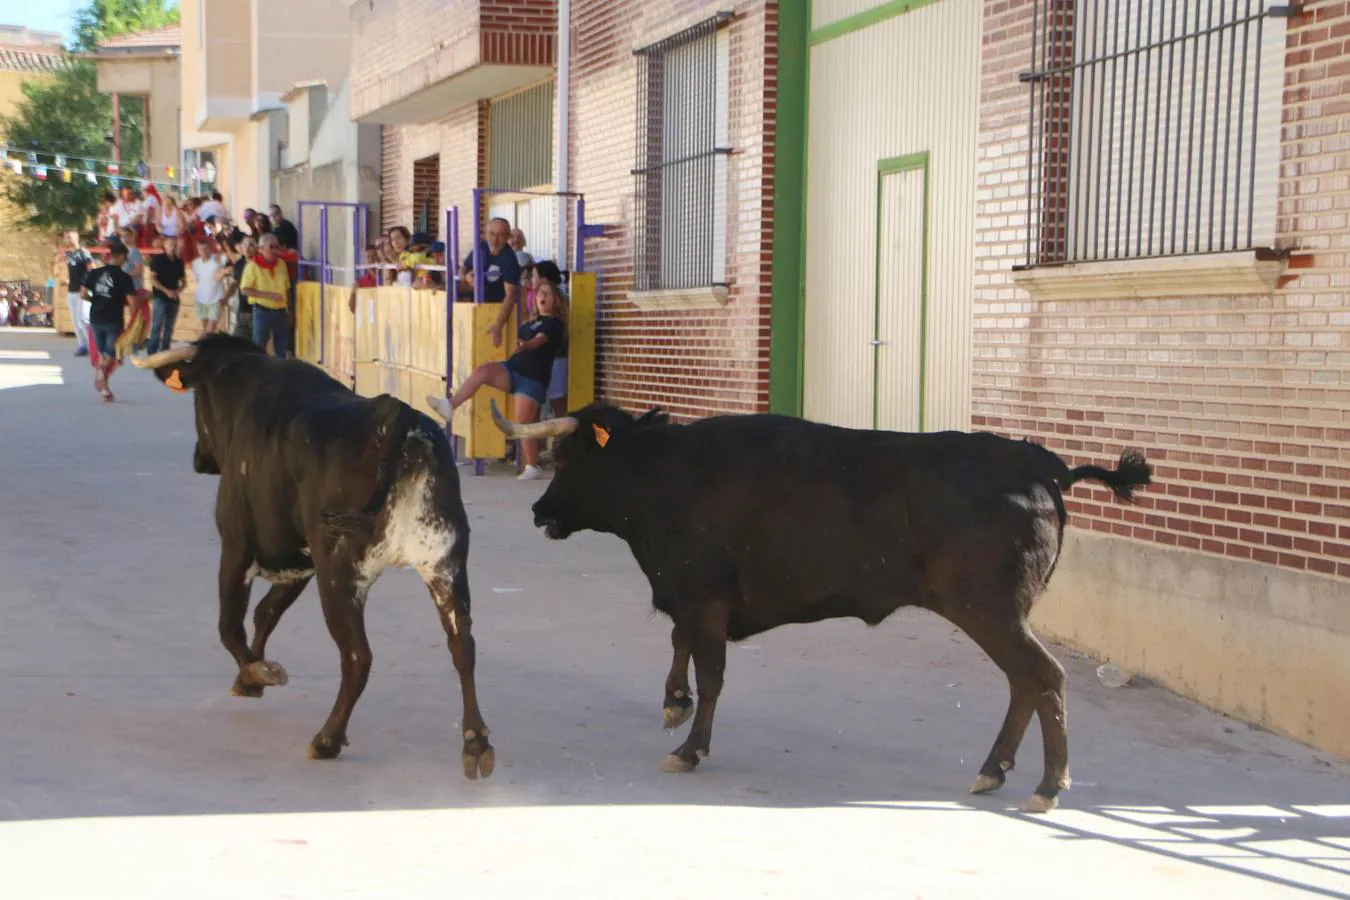 La localidad palentina despide sus fiestas con la última suelta taurina, que ha transcurrido sin incidentes y con numerosos aficionados